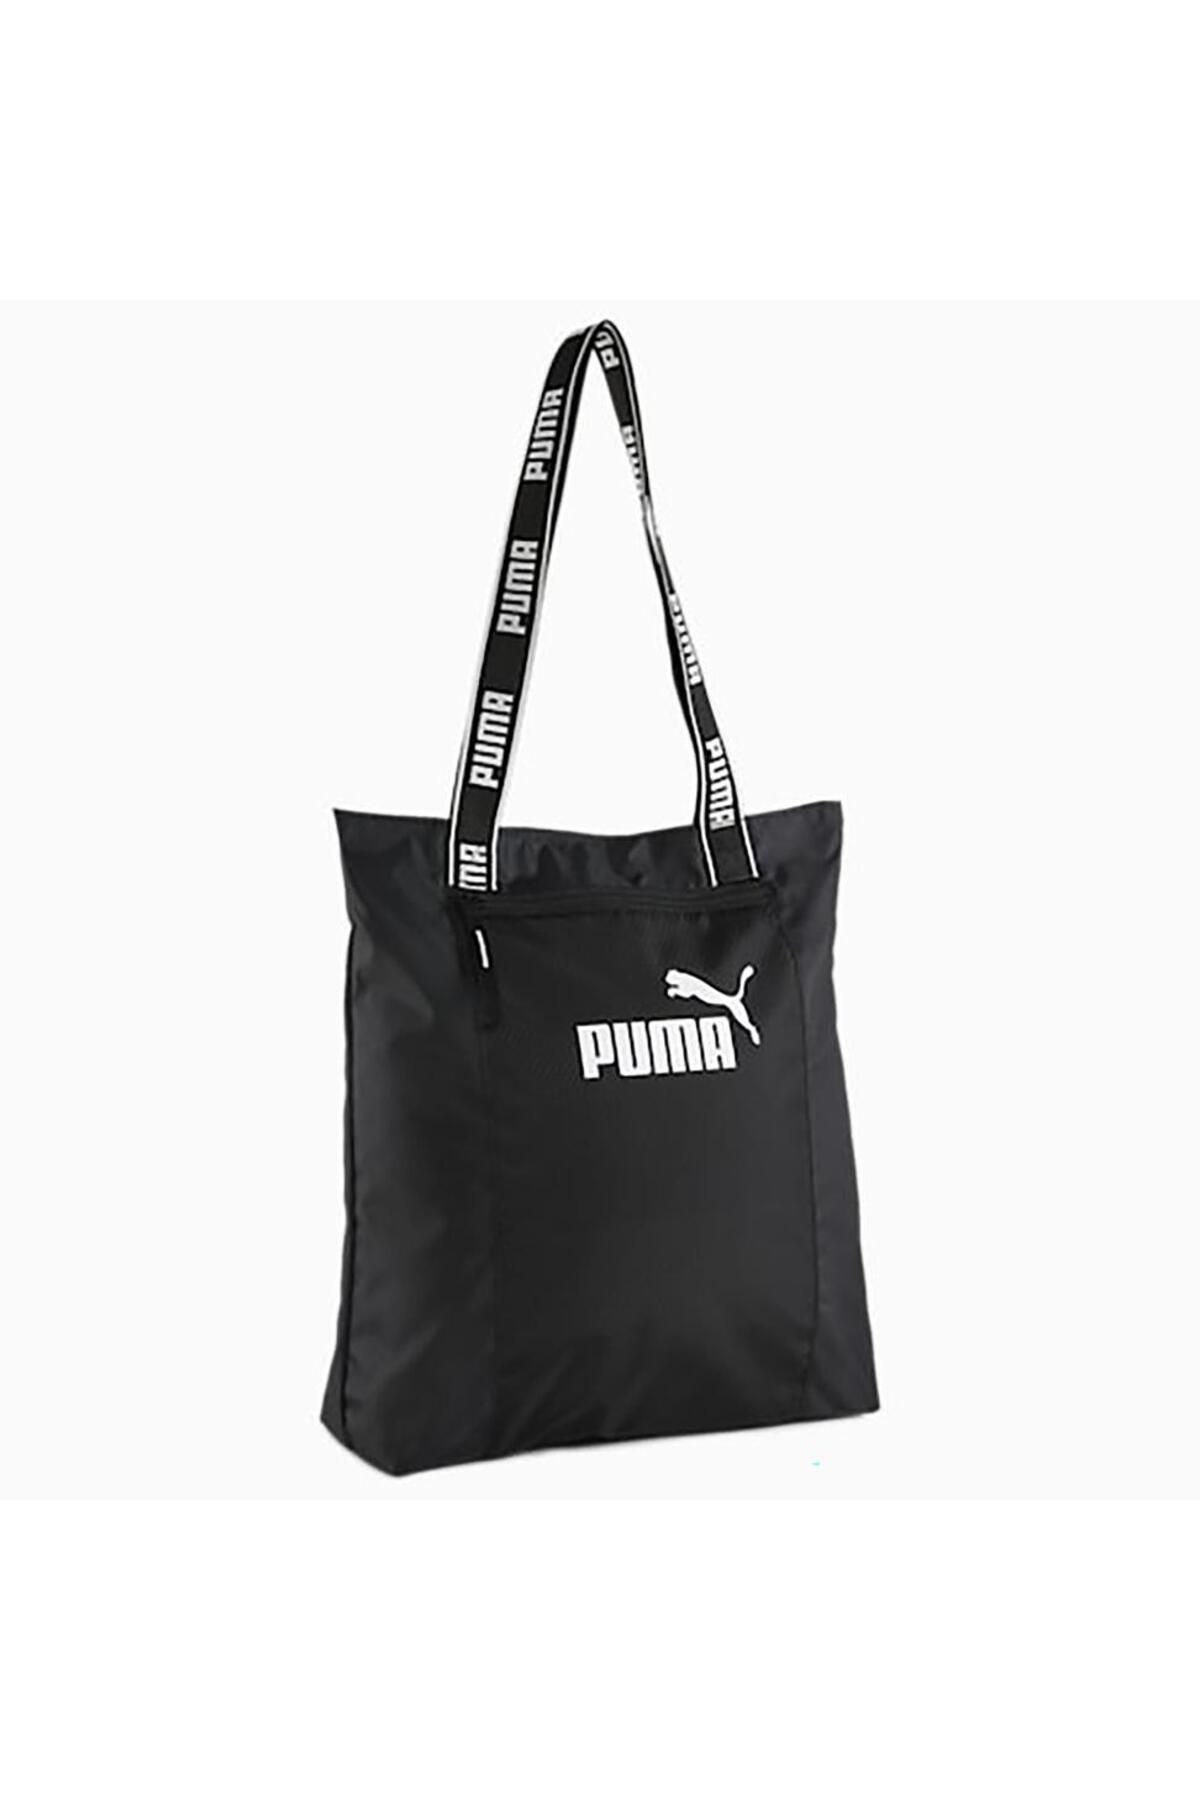 Puma Core Base Kadın Siyah Omuz Çantası (090267-01)